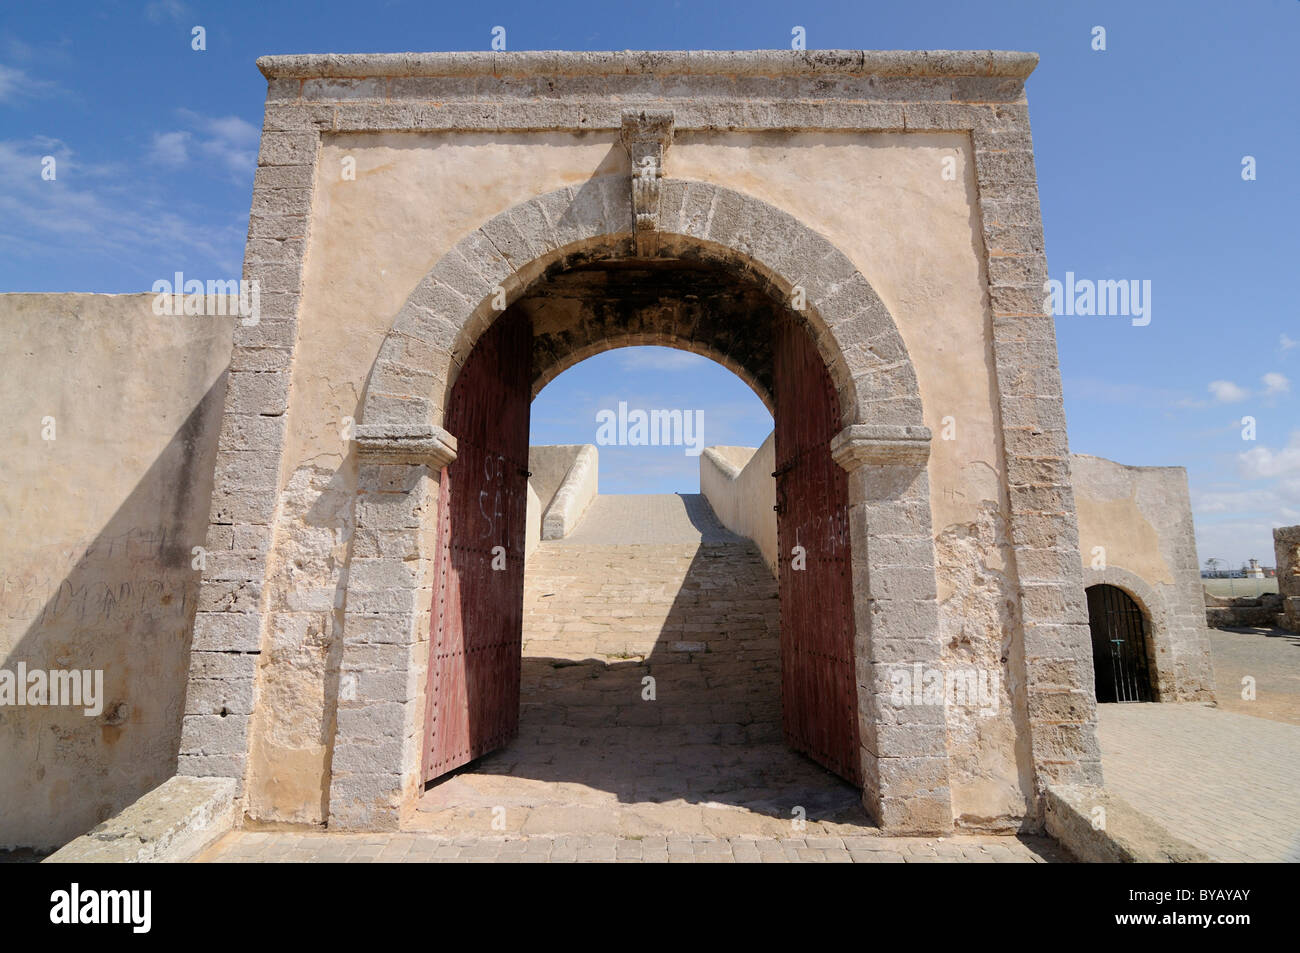 Antica fortezza Portoghese di El Jadida, sito patrimonio mondiale dell'UNESCO, Marocco, Africa Foto Stock